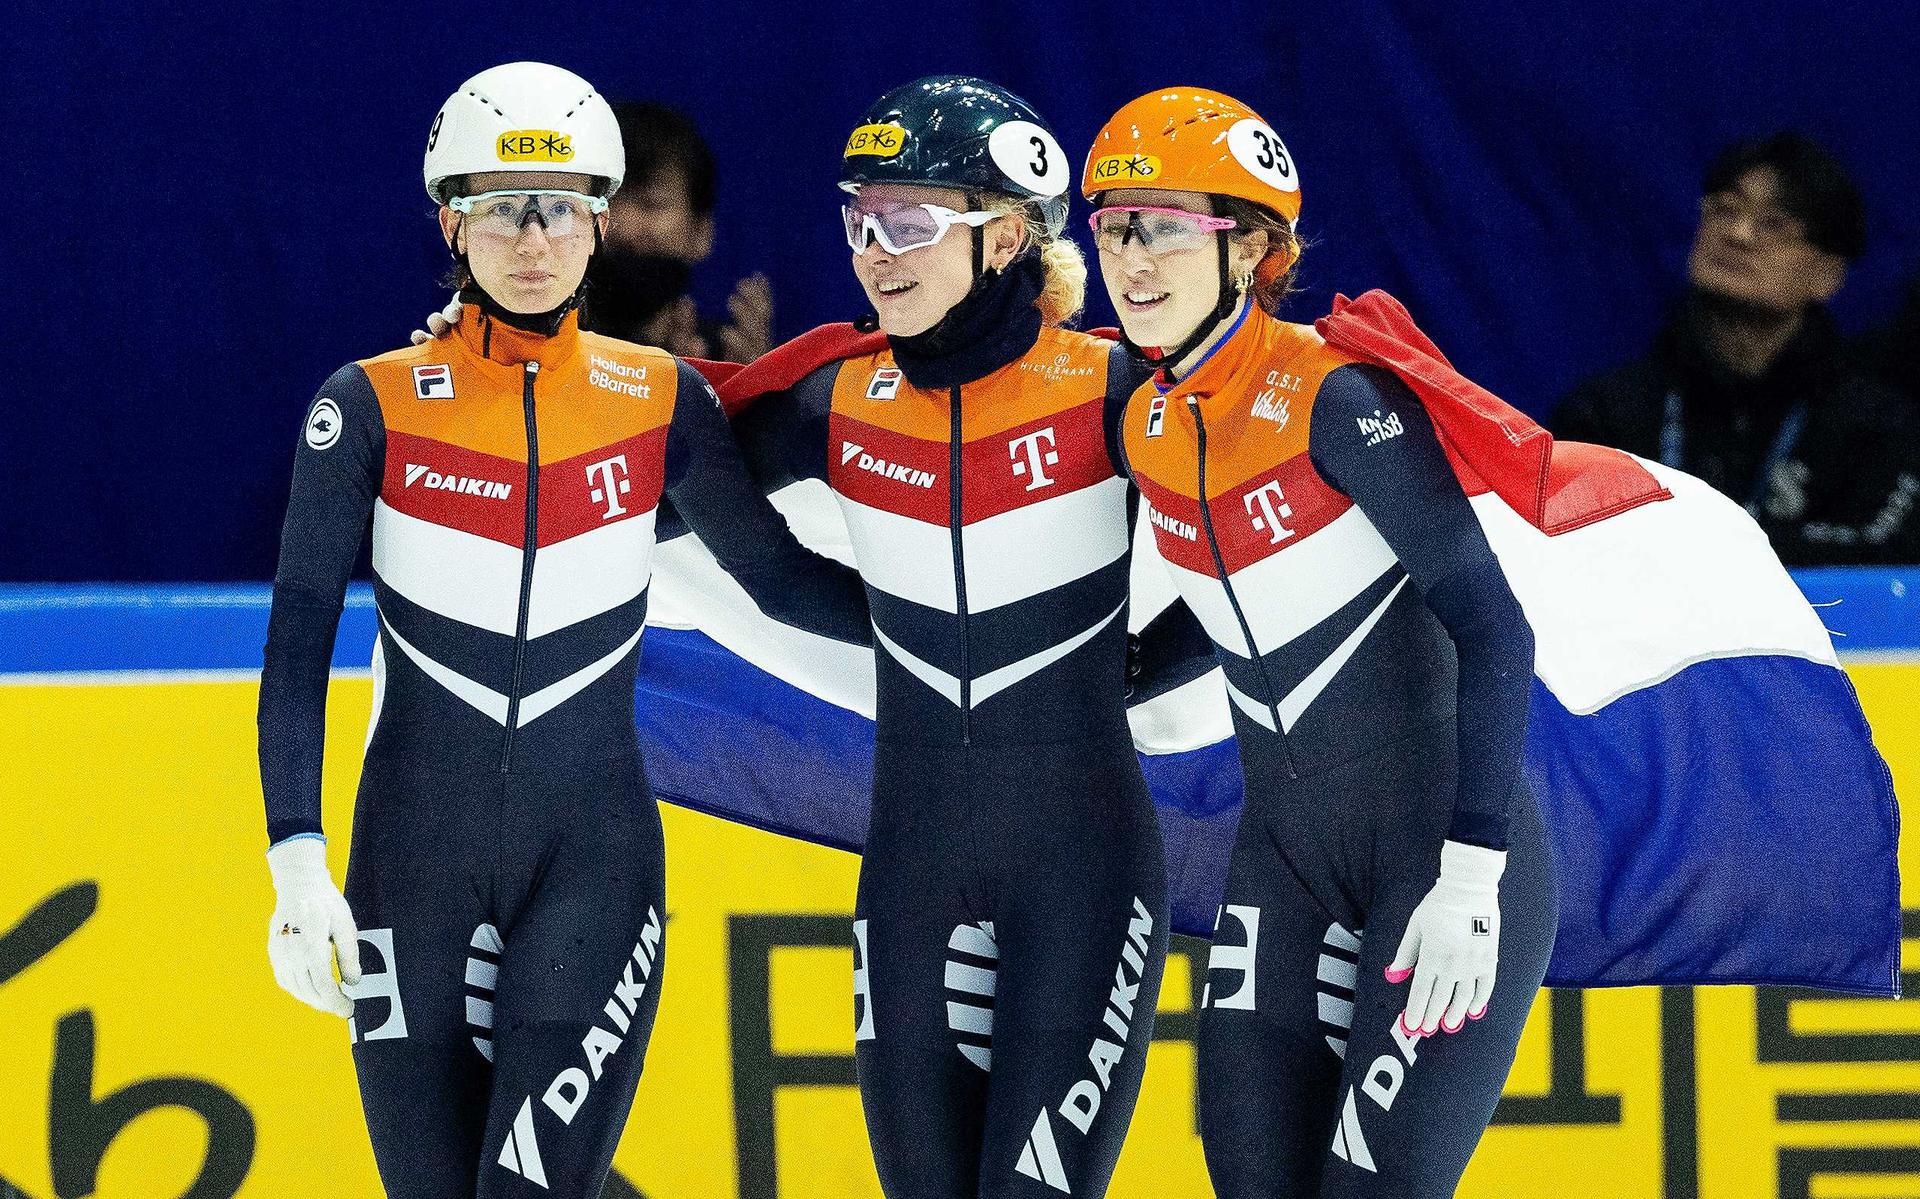 V.l.nr. Selma Poutsma, Xandra Velzeboer, Suzanne Schulting in actie tijdens op de finale op de 500 meter tijdens het WK Shorttrack in Zuid-Korea.